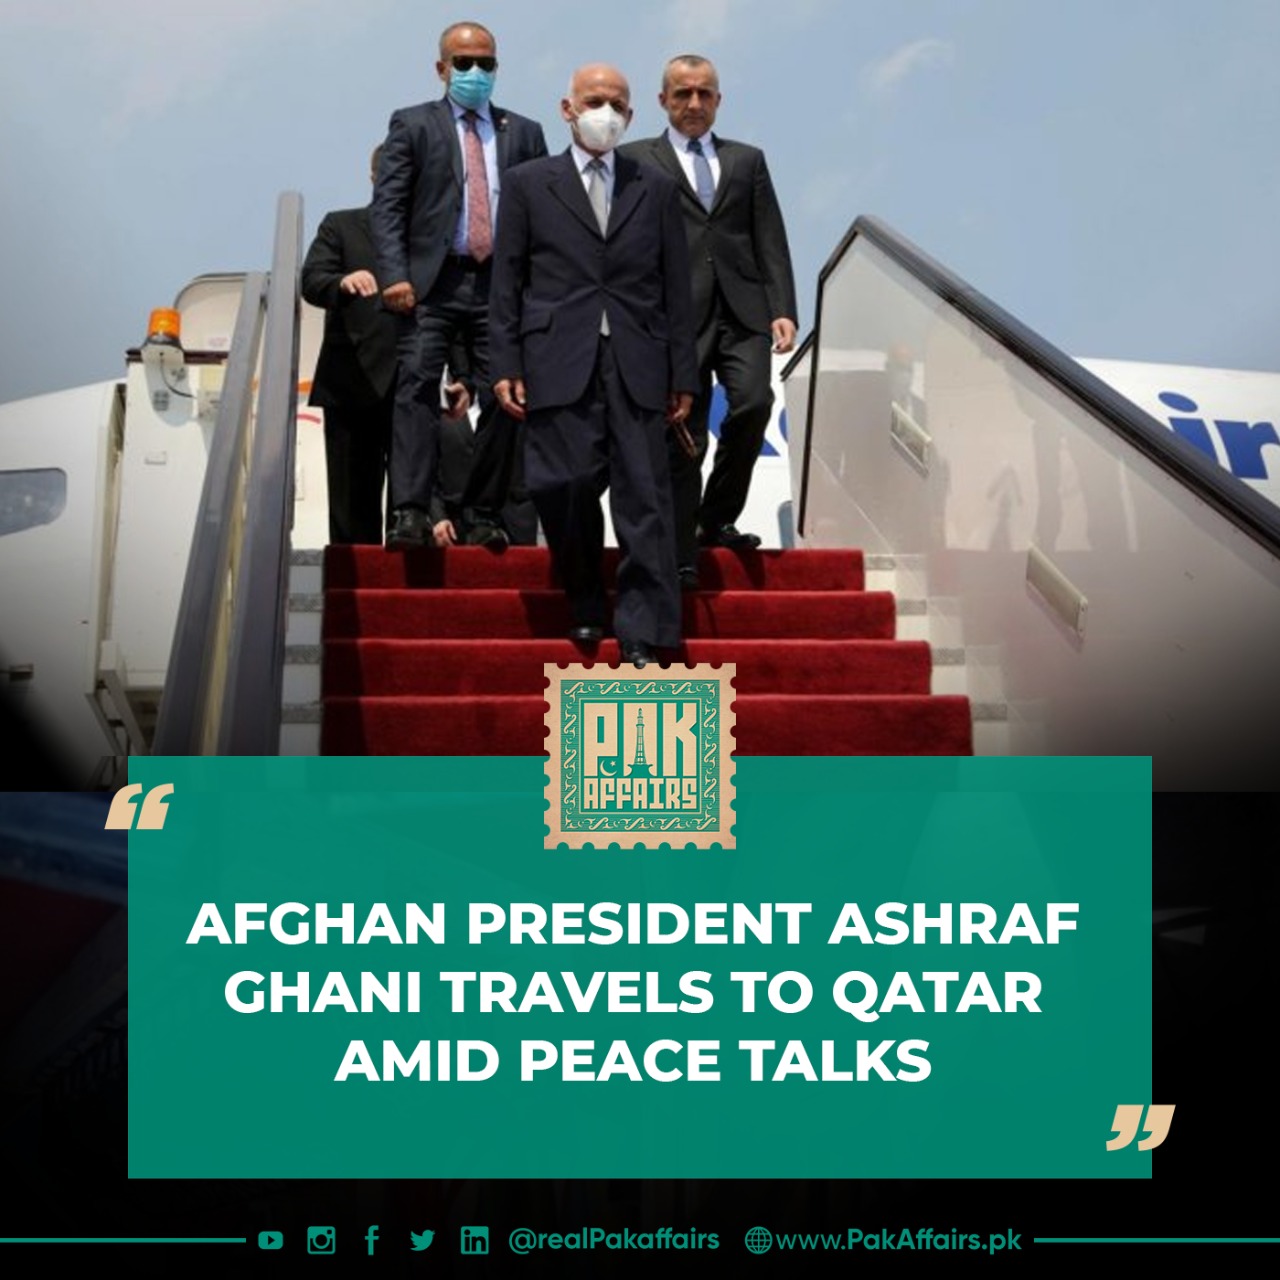 Afghan President Ashraf Ghani travels to Qatar amid peace talks